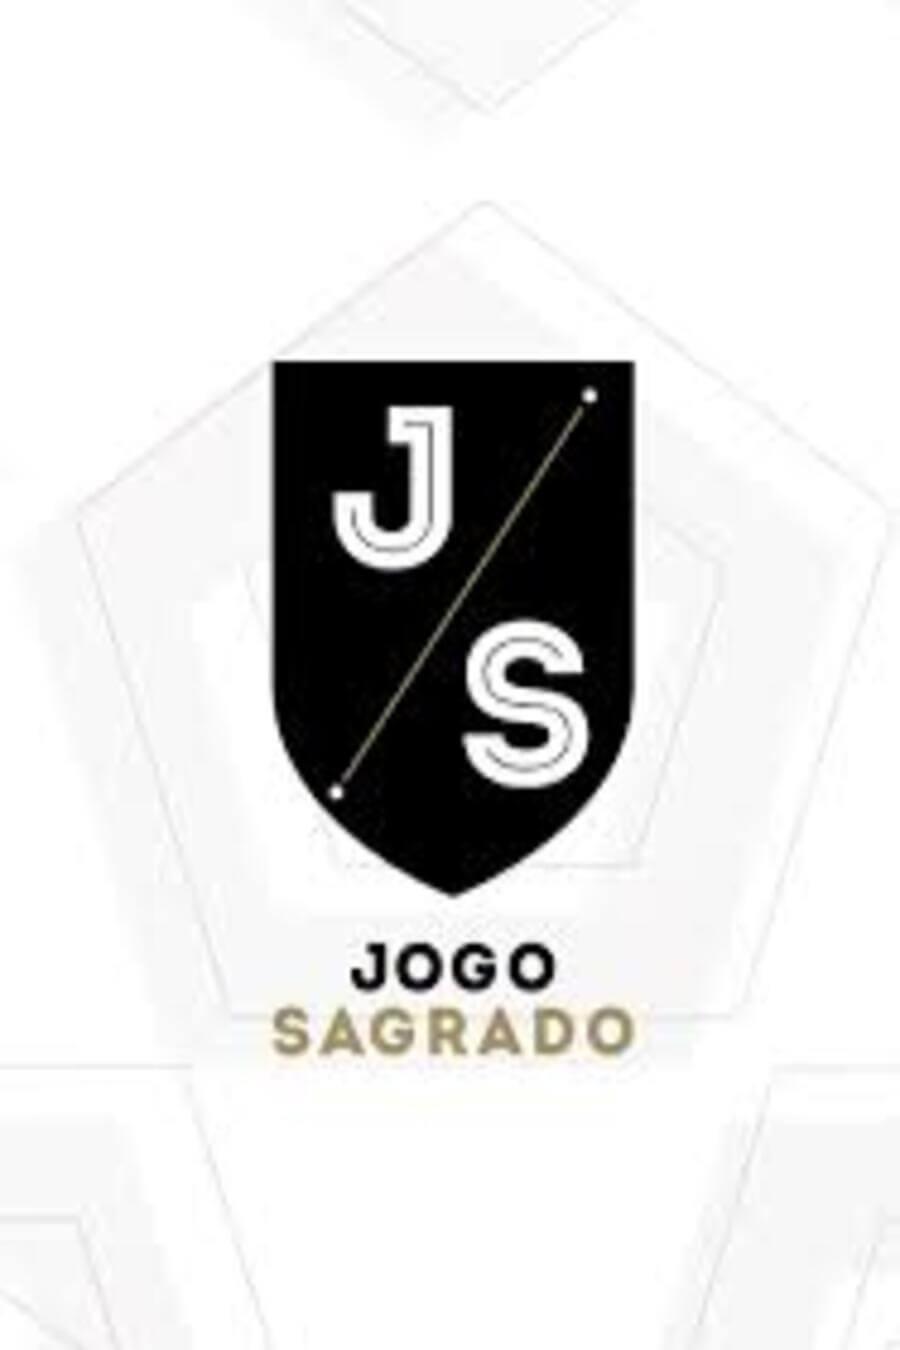 TV ratings for Jogo Sagrado in the United Kingdom. Fox Sports Brasil TV series